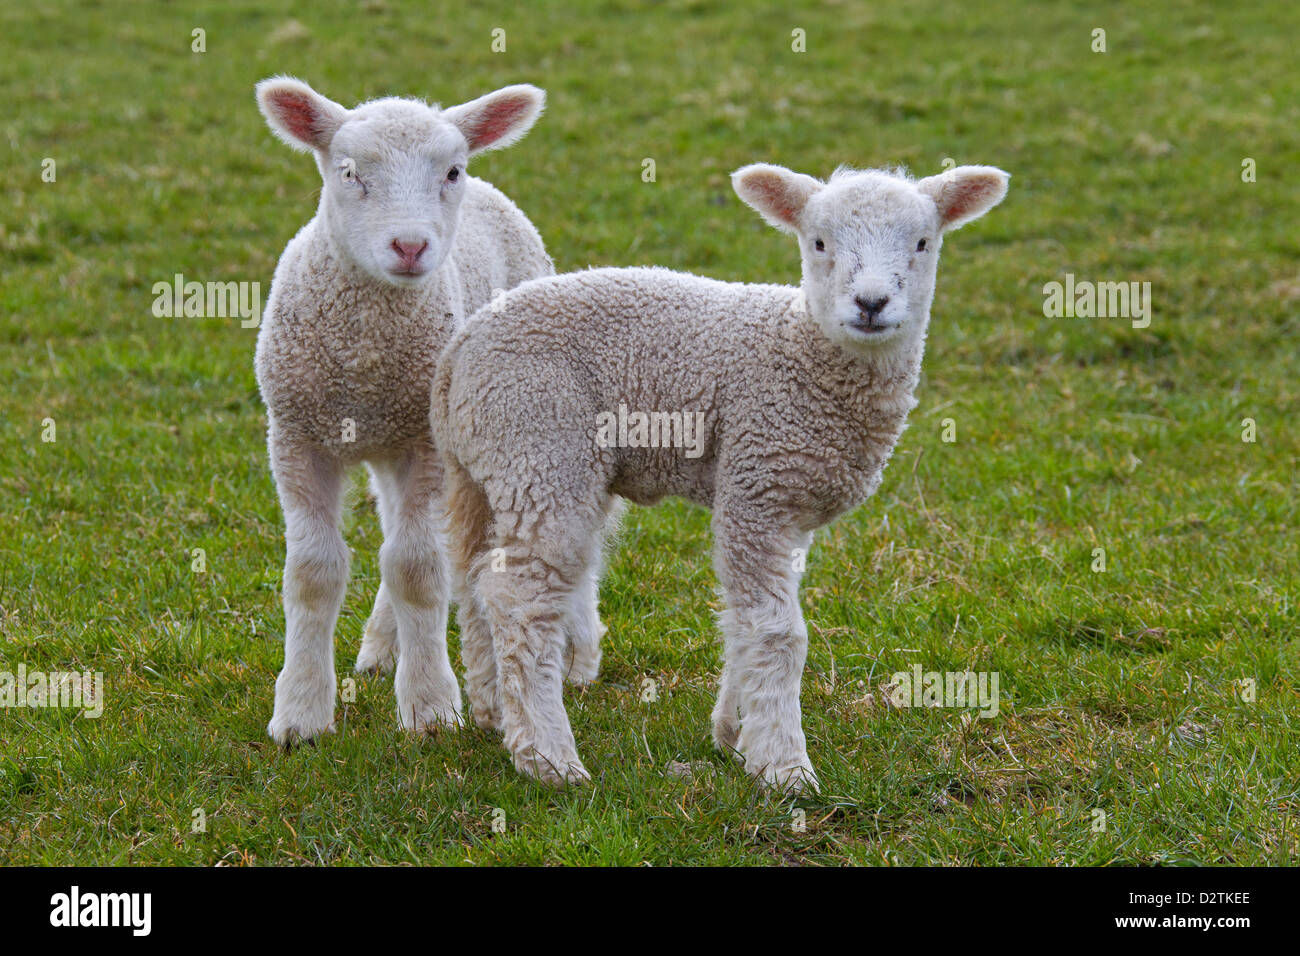 Deux moutons blancs agneaux (Ovis aries) dans le pré Banque D'Images